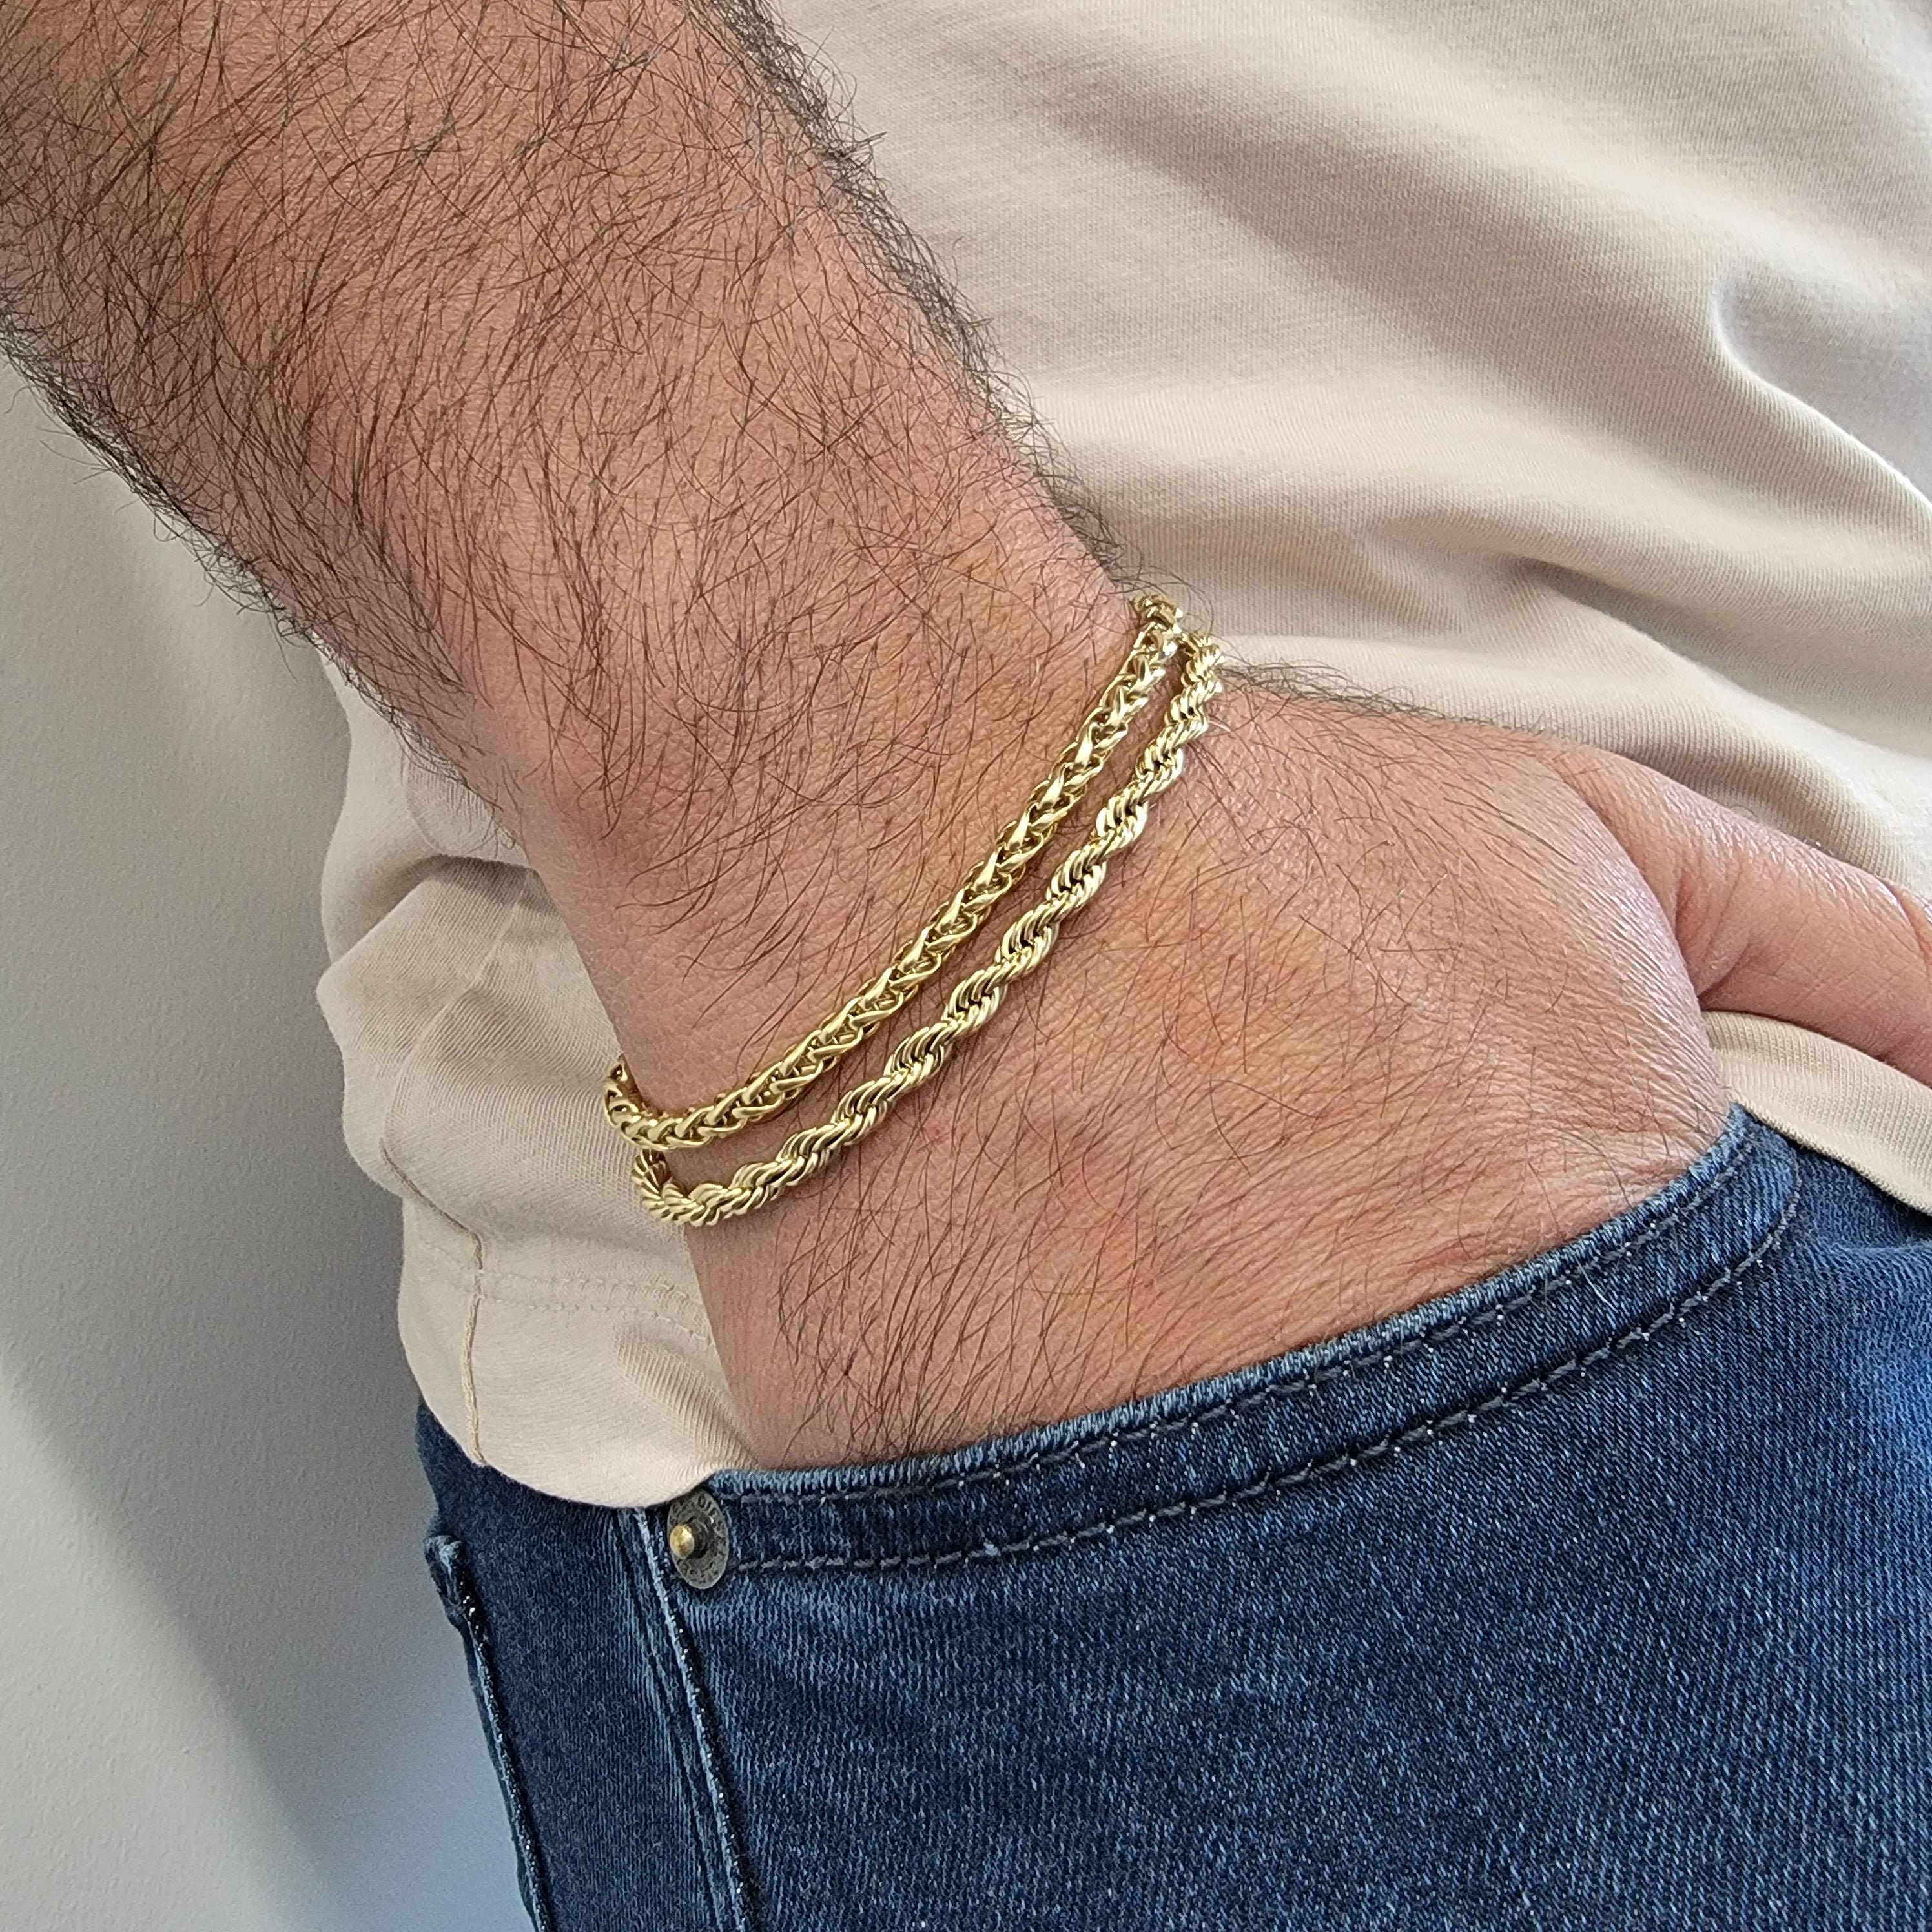 Wheat Chain Bracelet in 18K Yellow Gold, 4mm